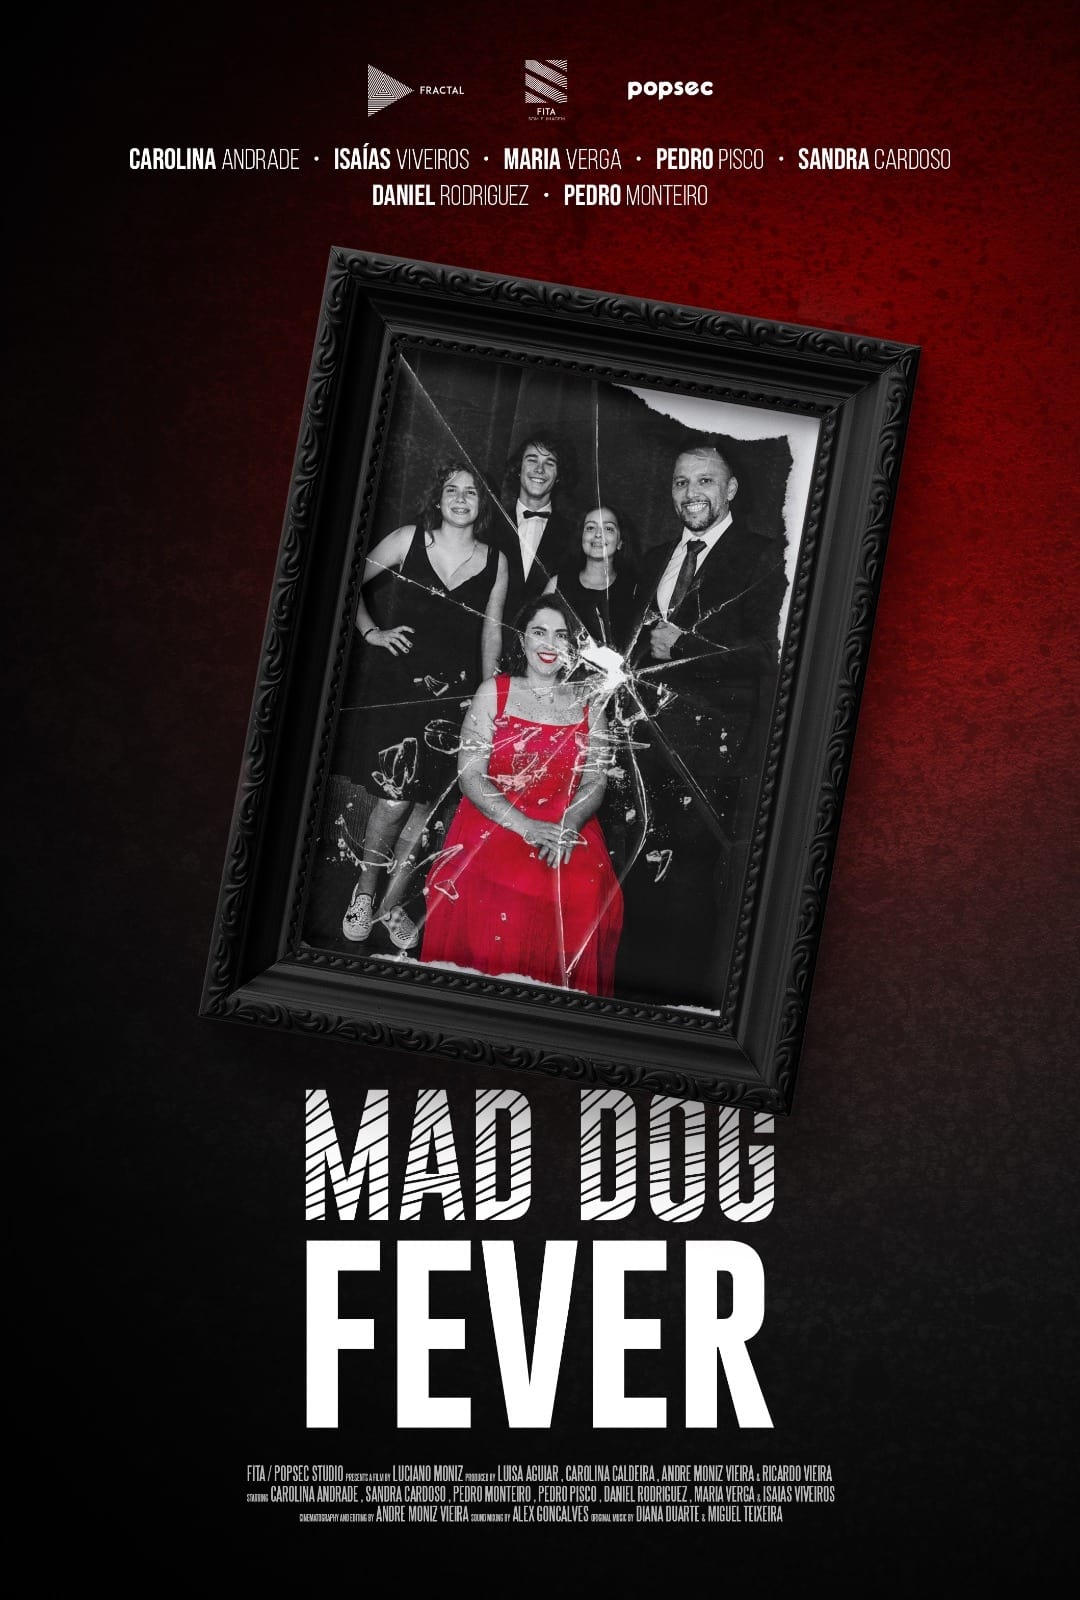 Mad Dog Fever